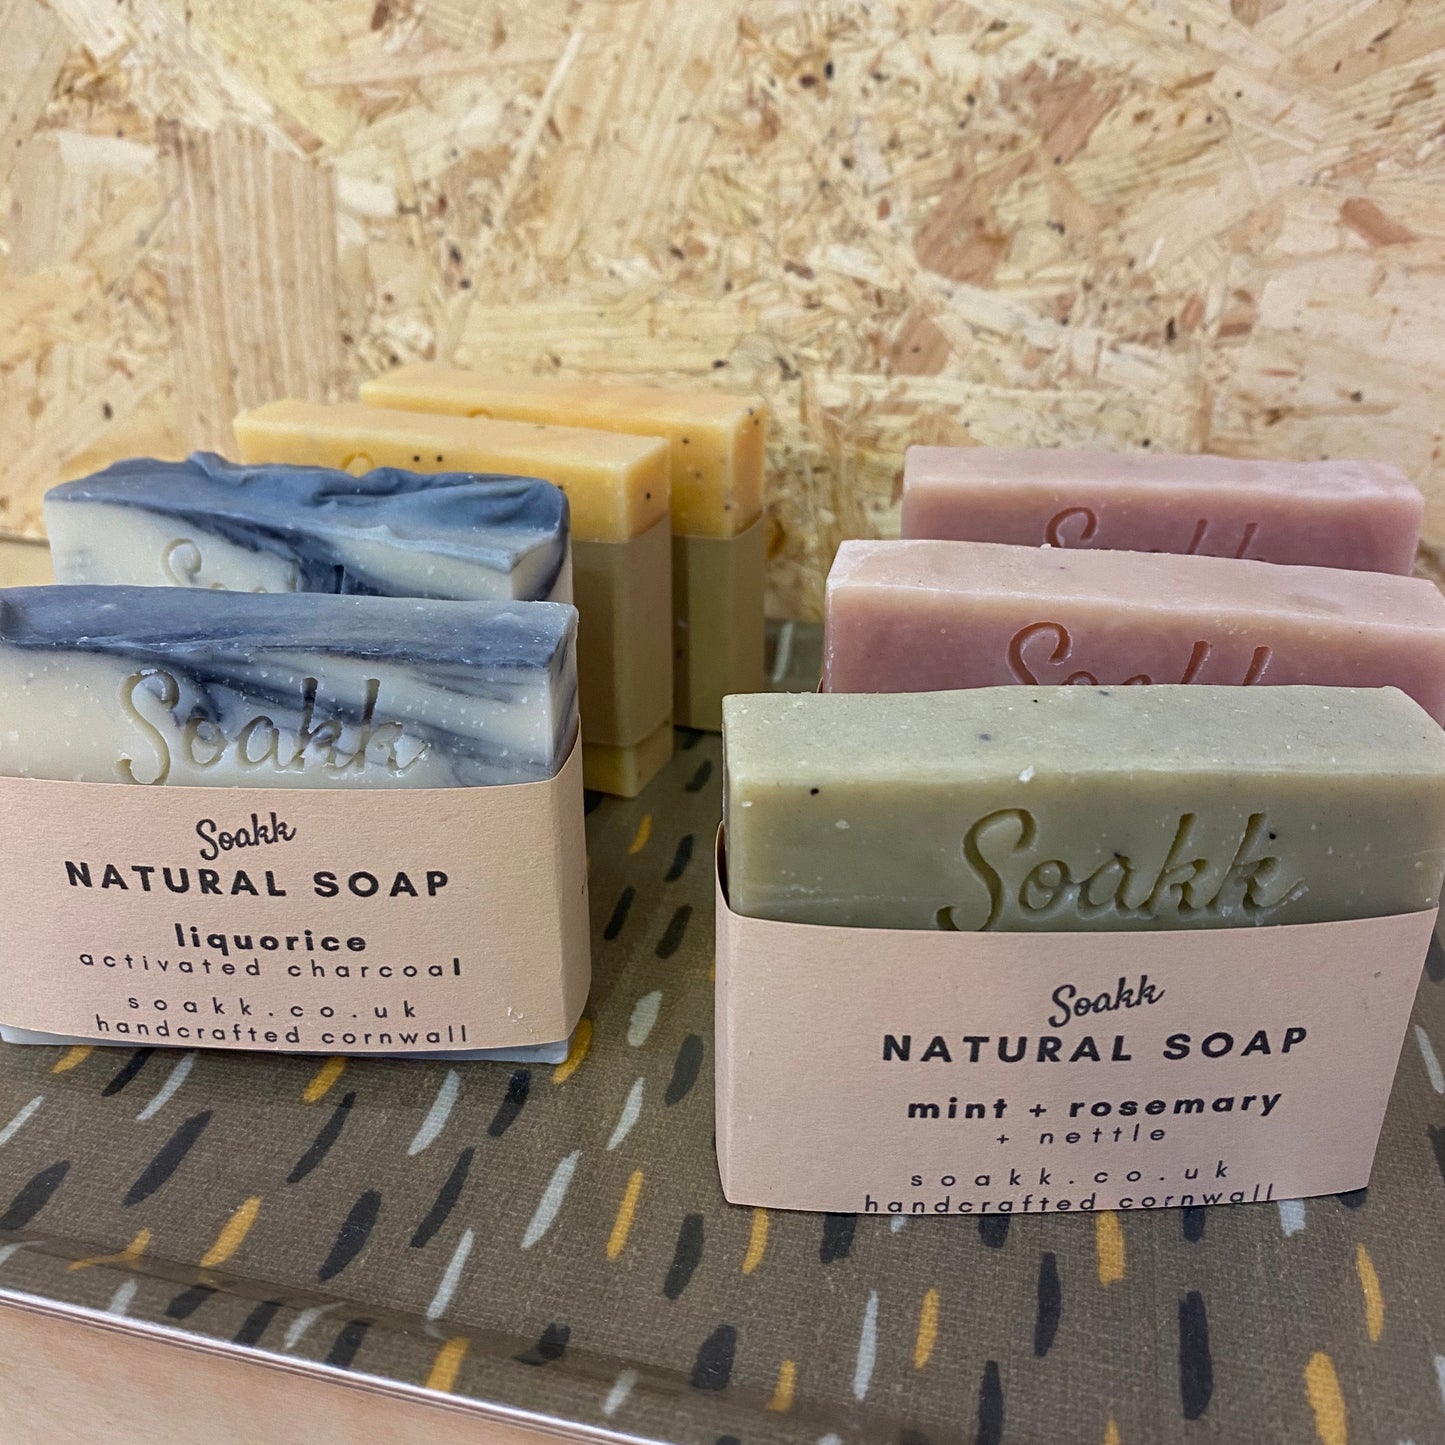 Lemon + Shea + Cocoa Butter Natural soap